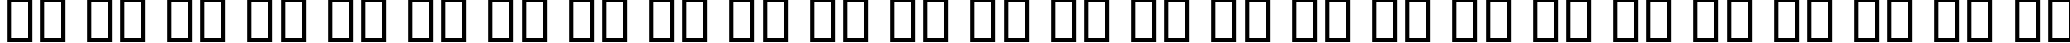 Пример написания английского алфавита шрифтом B Baran Outline